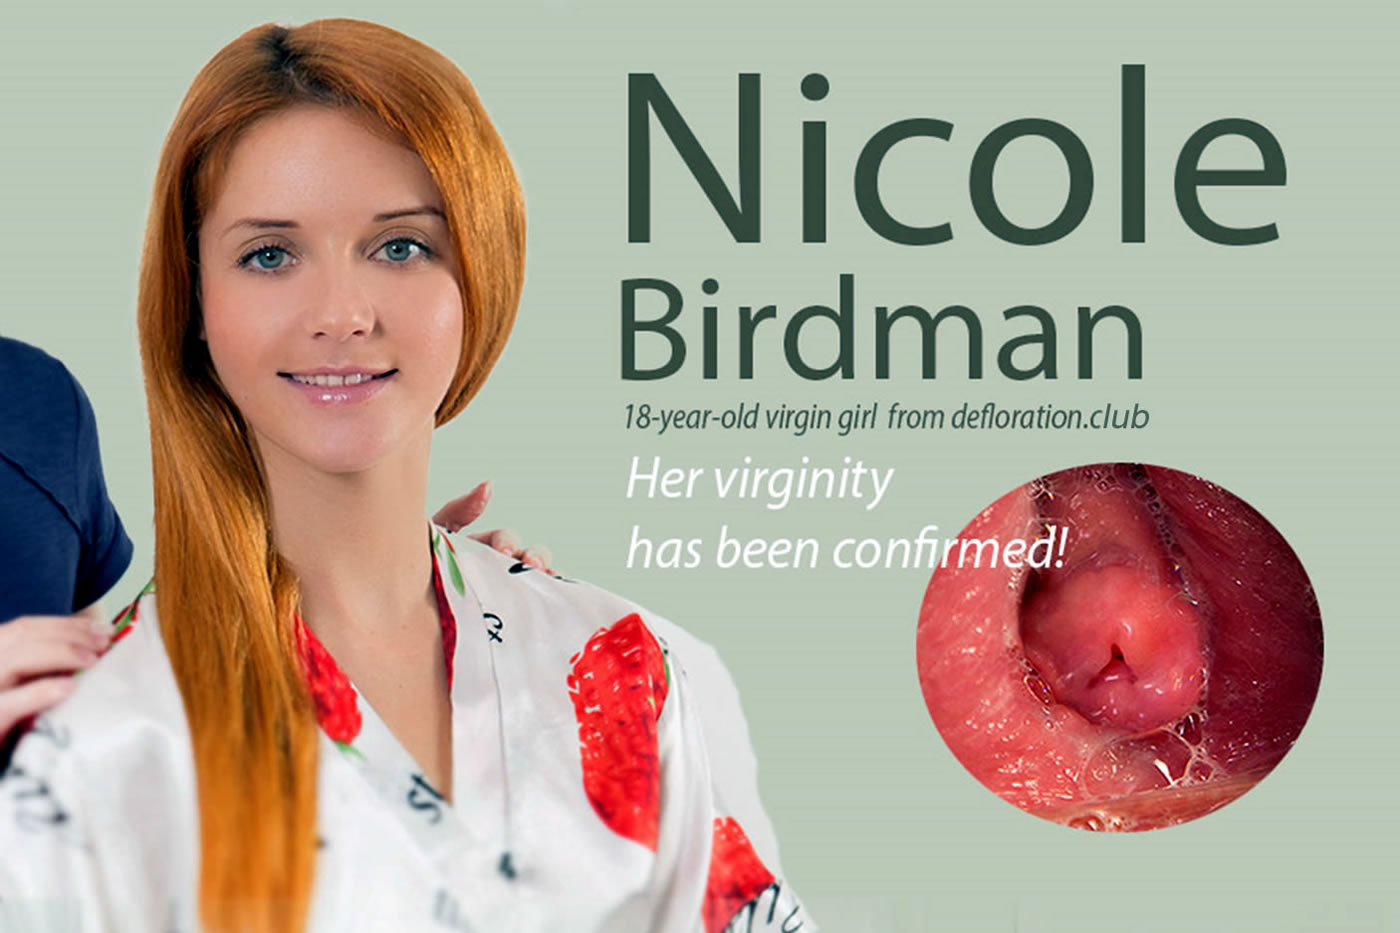 1400px x 933px - Nicole Birdman